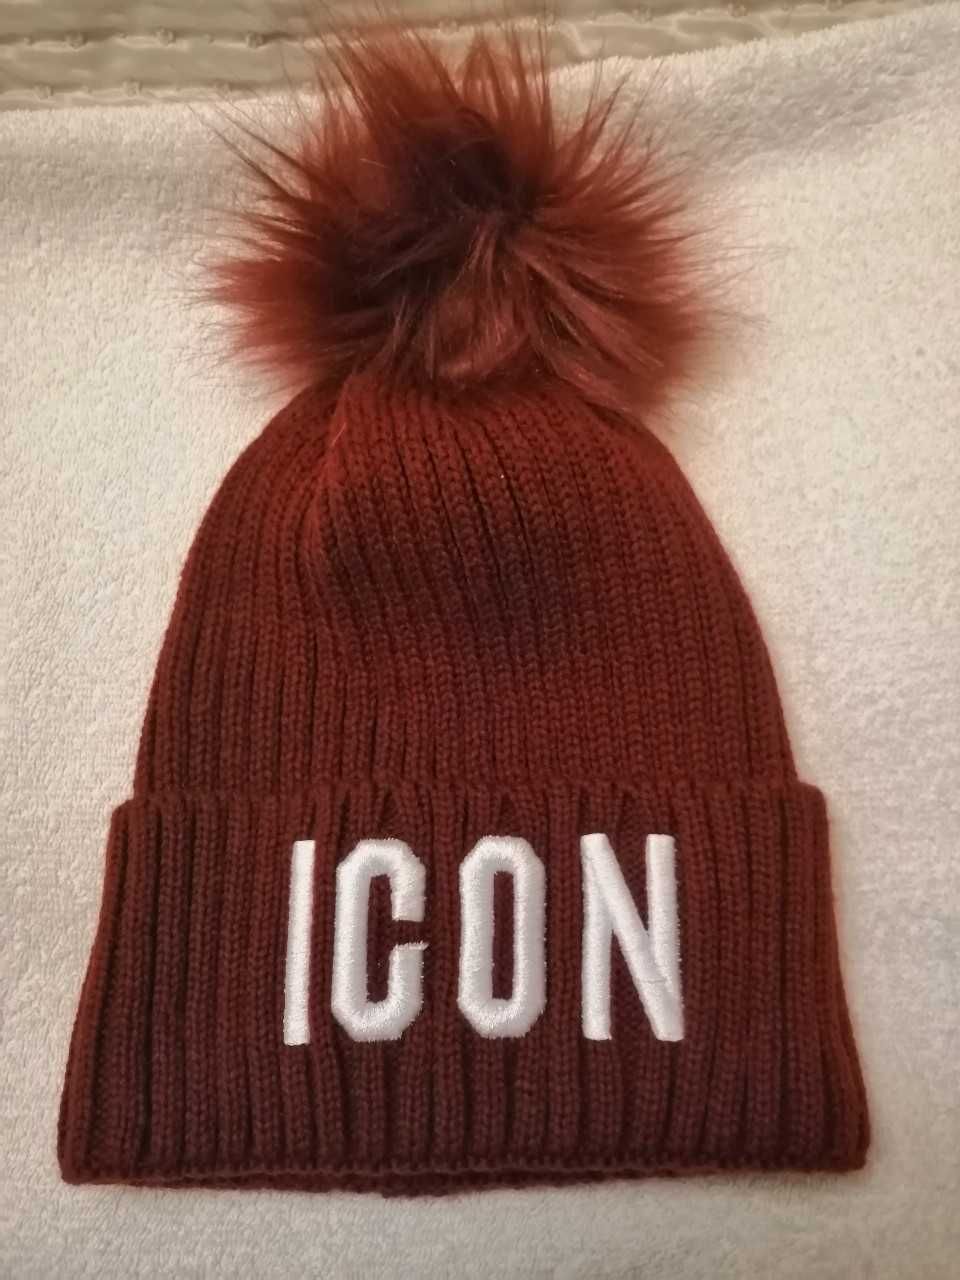 ICON czapka damska nowa kolor bordowy zima